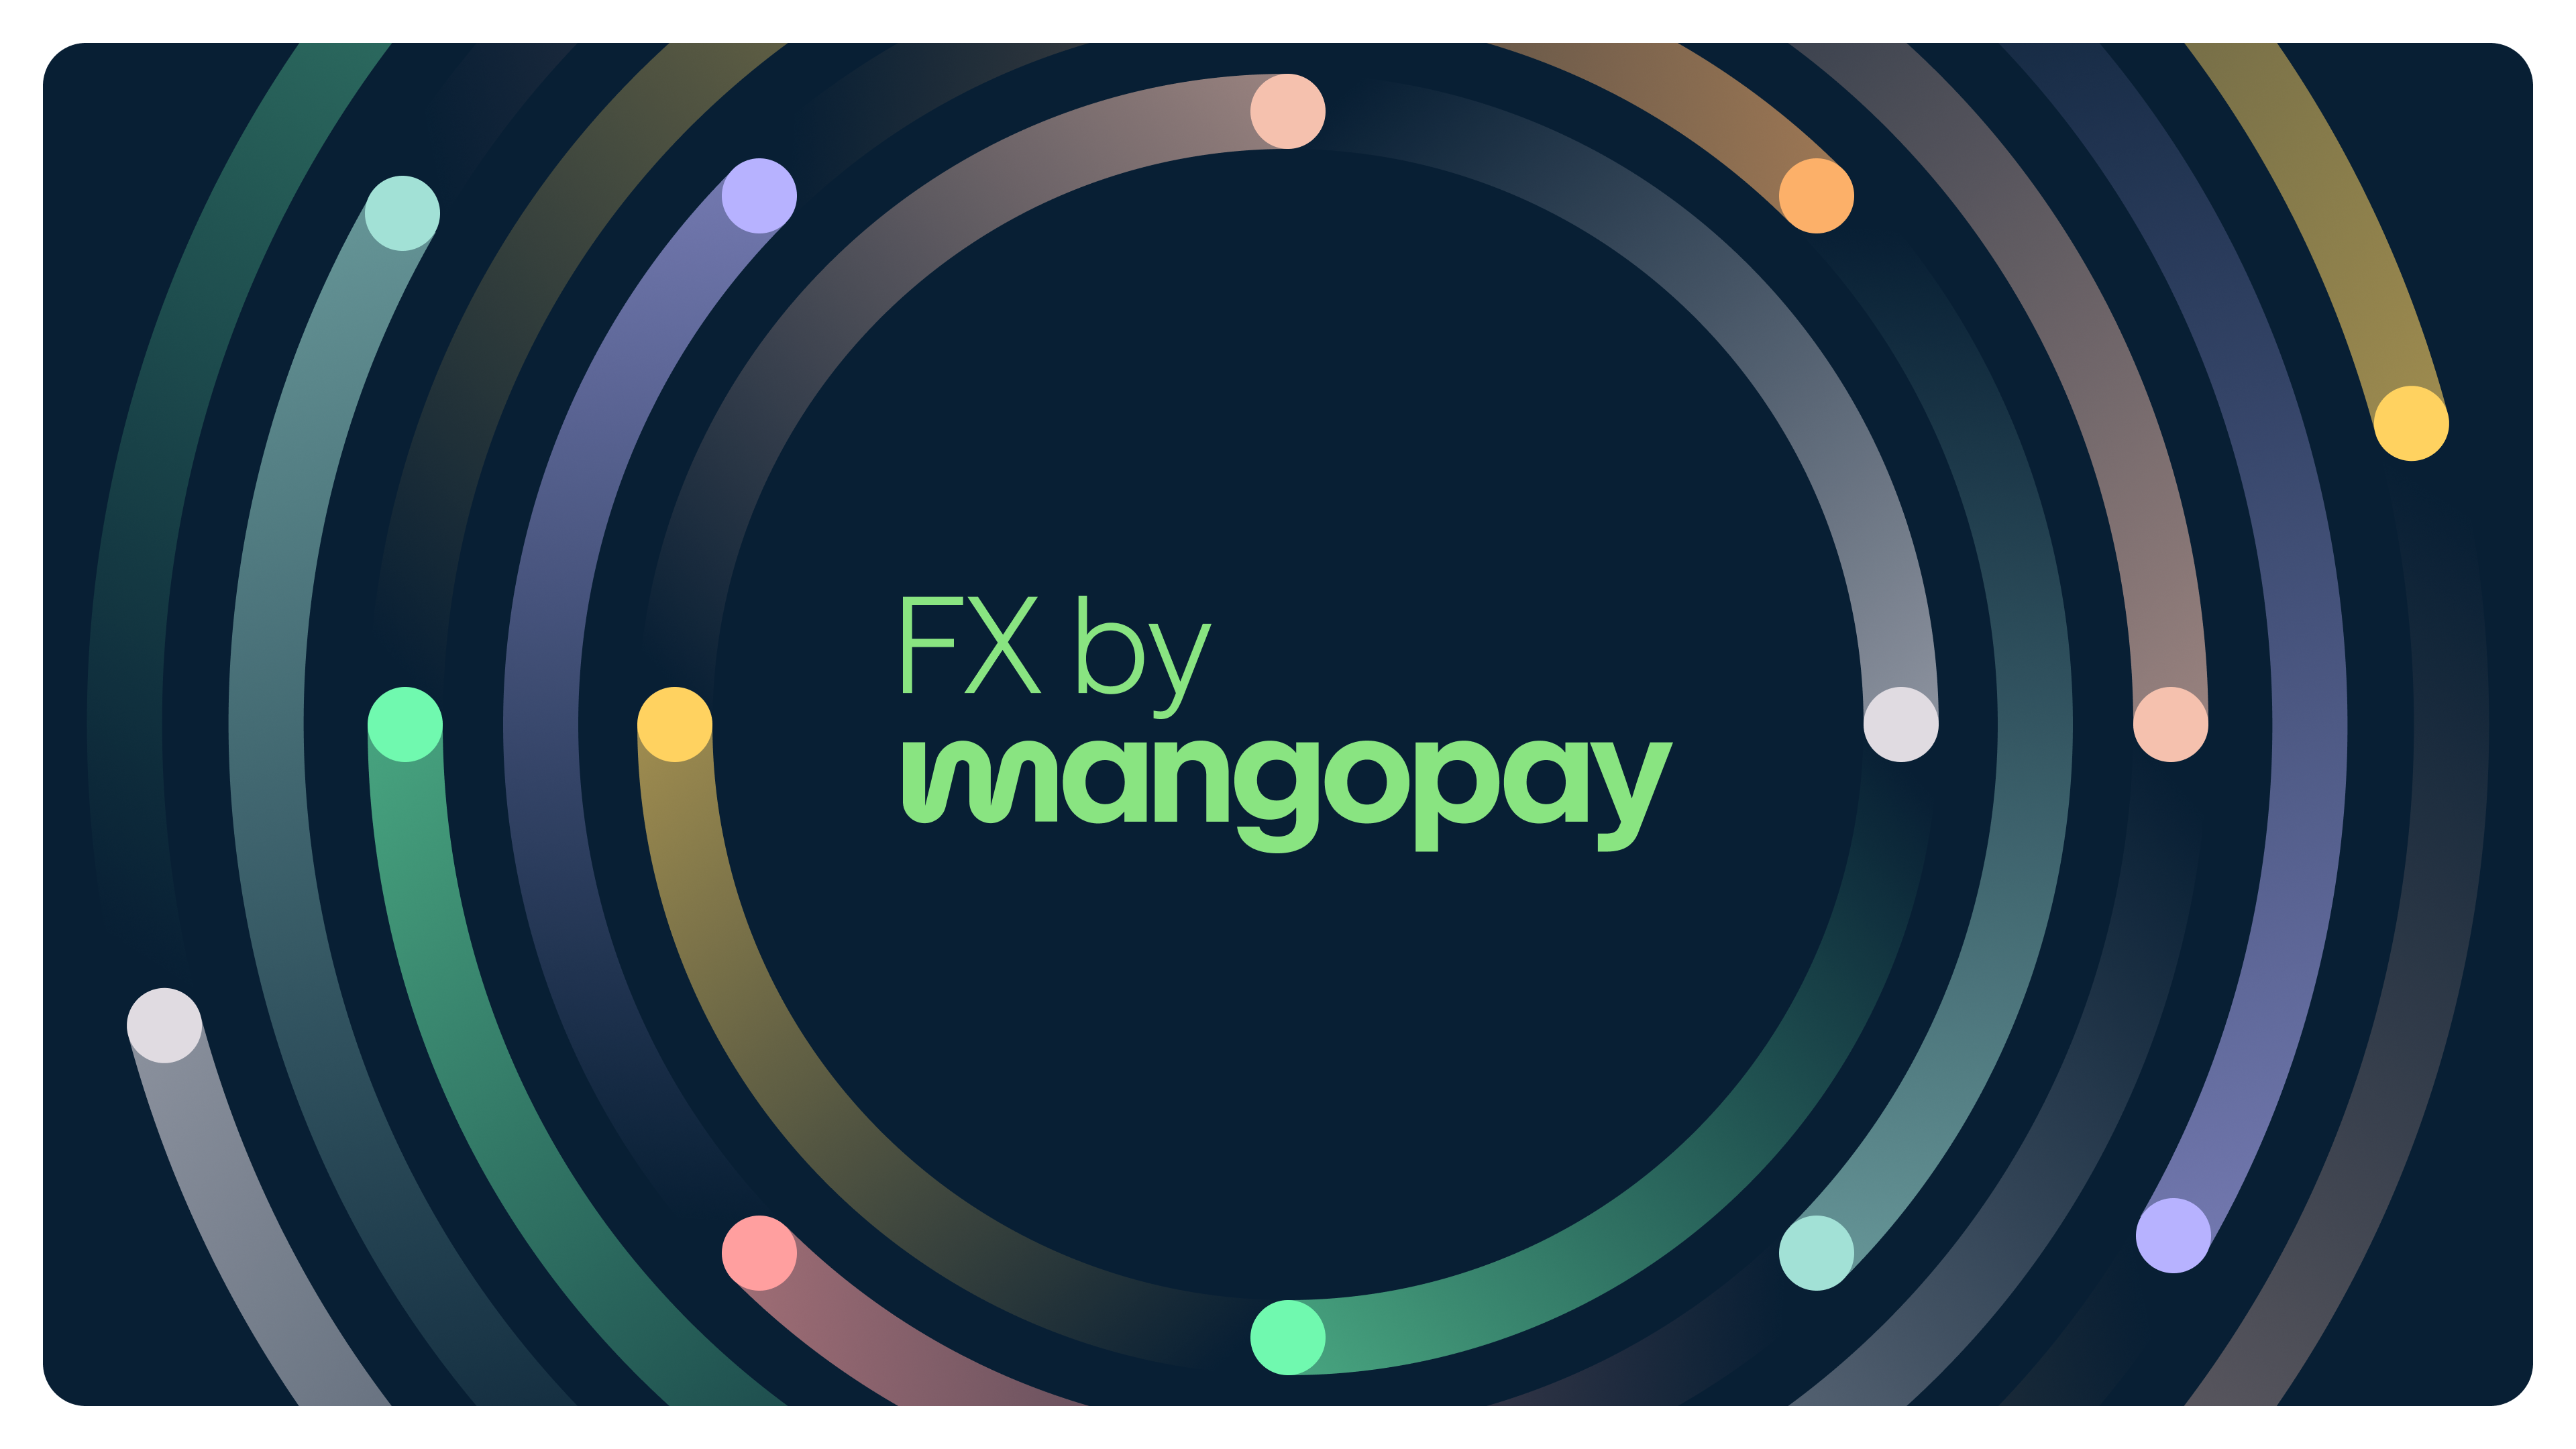 Mangopay-fx-hero-image@2-1